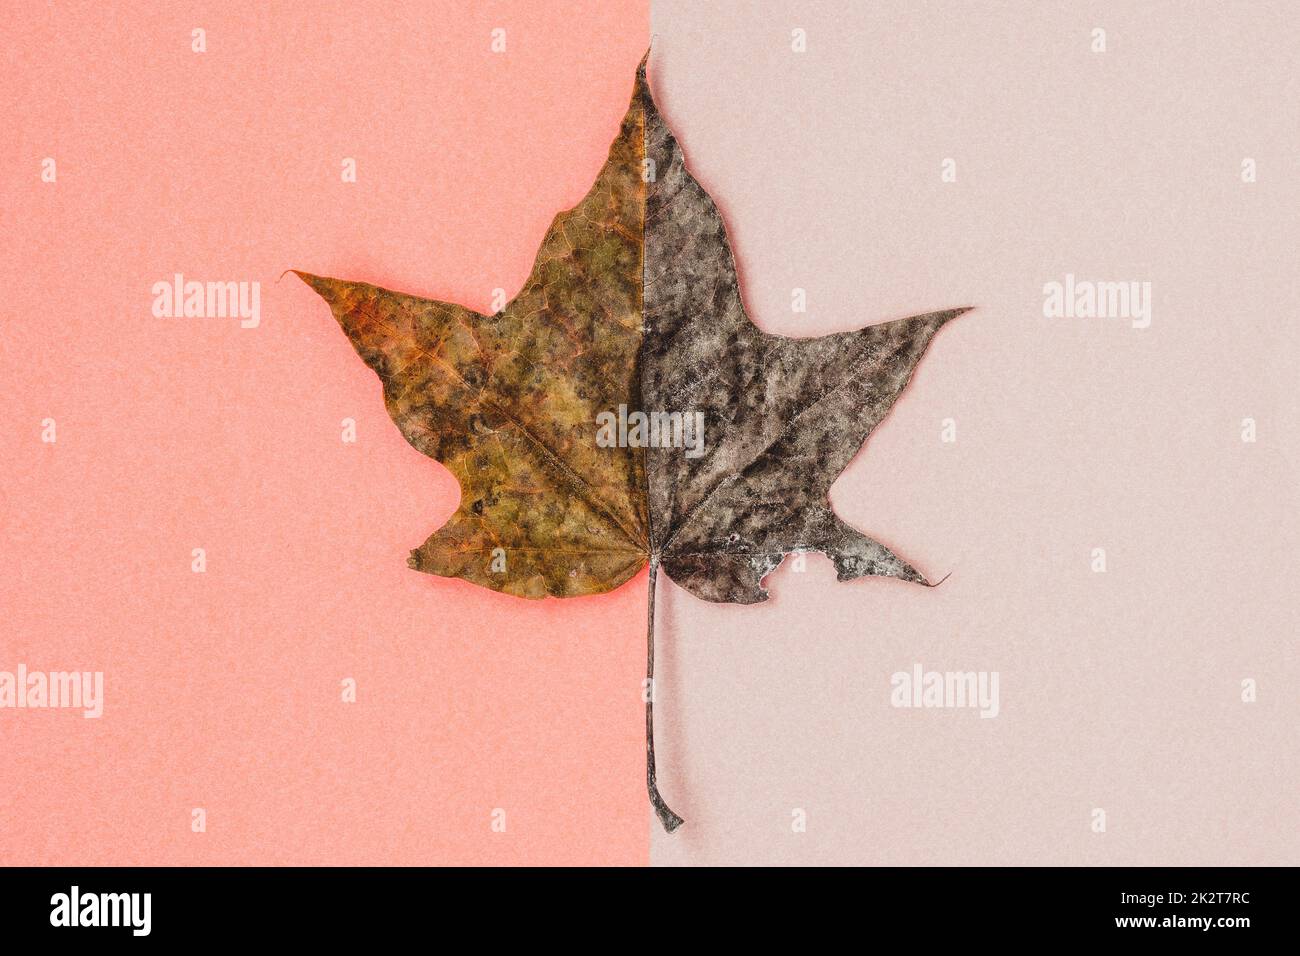 Composición mínima con hojas de arce secas sobre fondo pastel Foto de stock